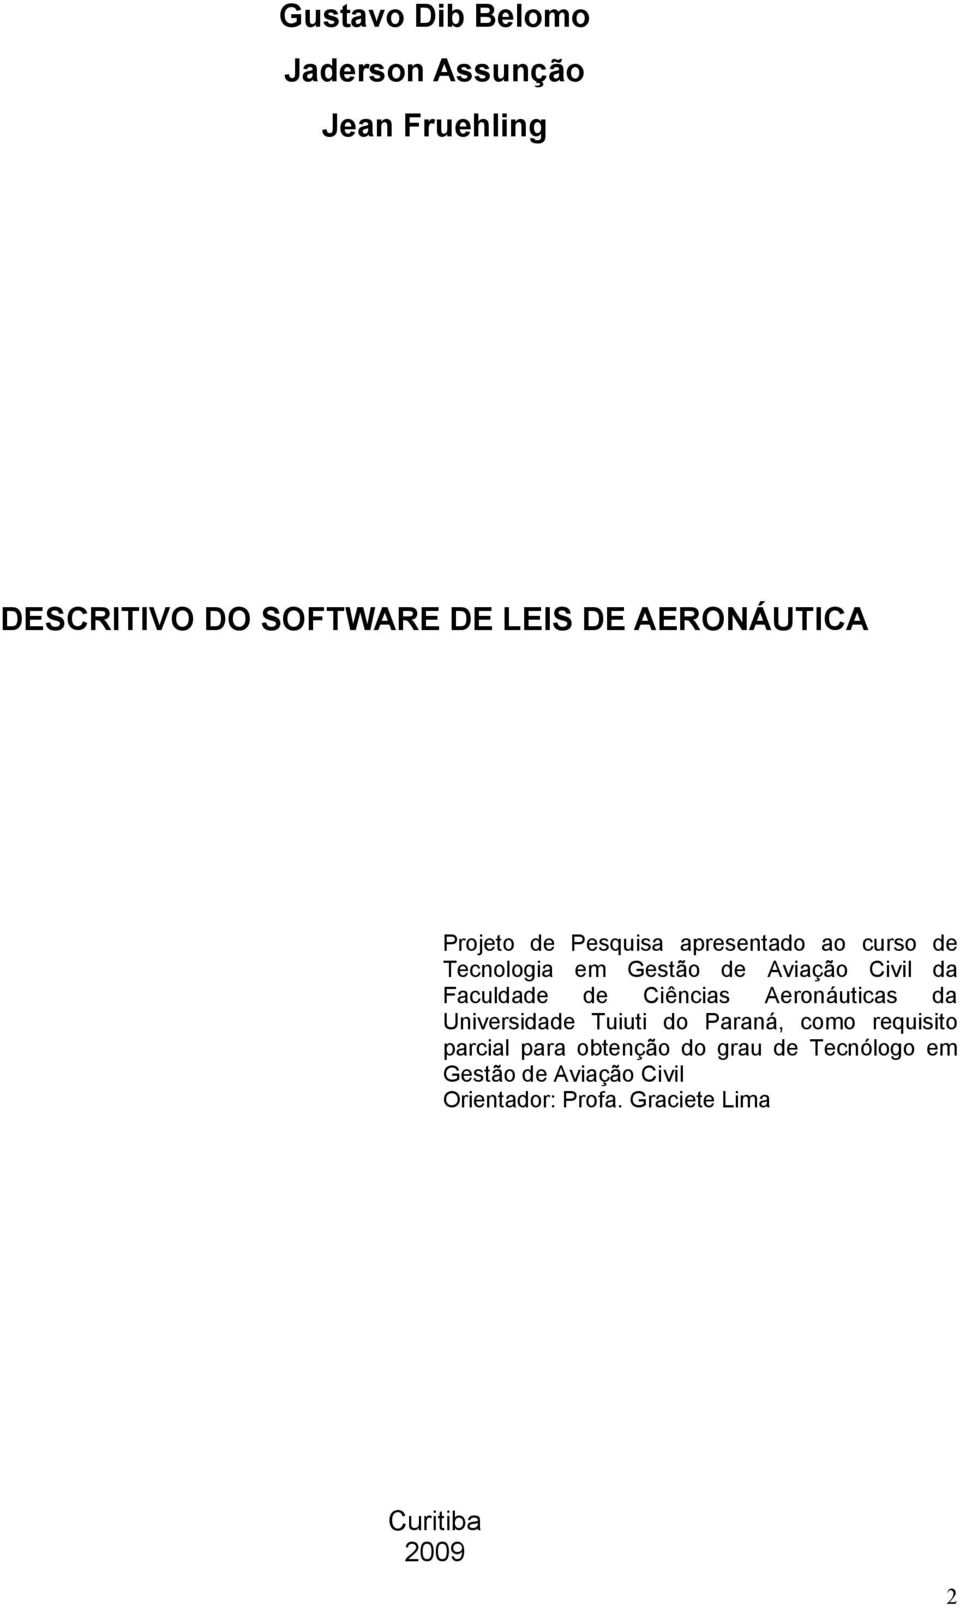 Faculdade de Ciências Aeronáuticas da Universidade Tuiuti do Paraná, como requisito parcial para